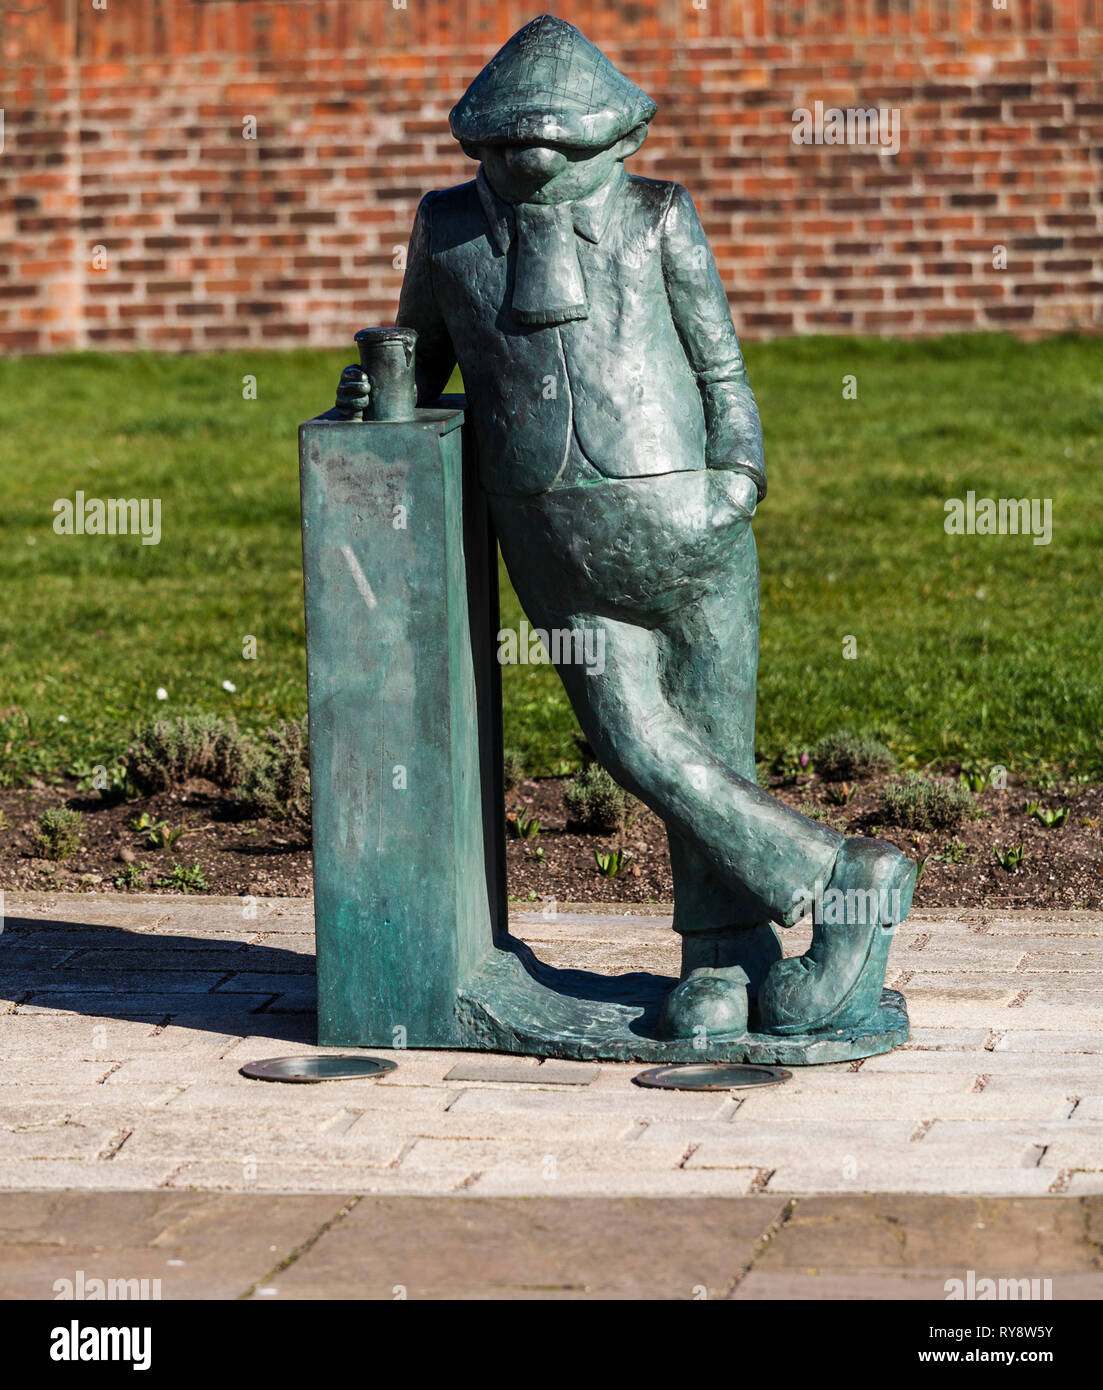 Estatua de Andy Capp, un famoso personaje de cómic creado por Reg Smythe y apareció en el periódico Daily Mirror durante muchos años. Foto de stock